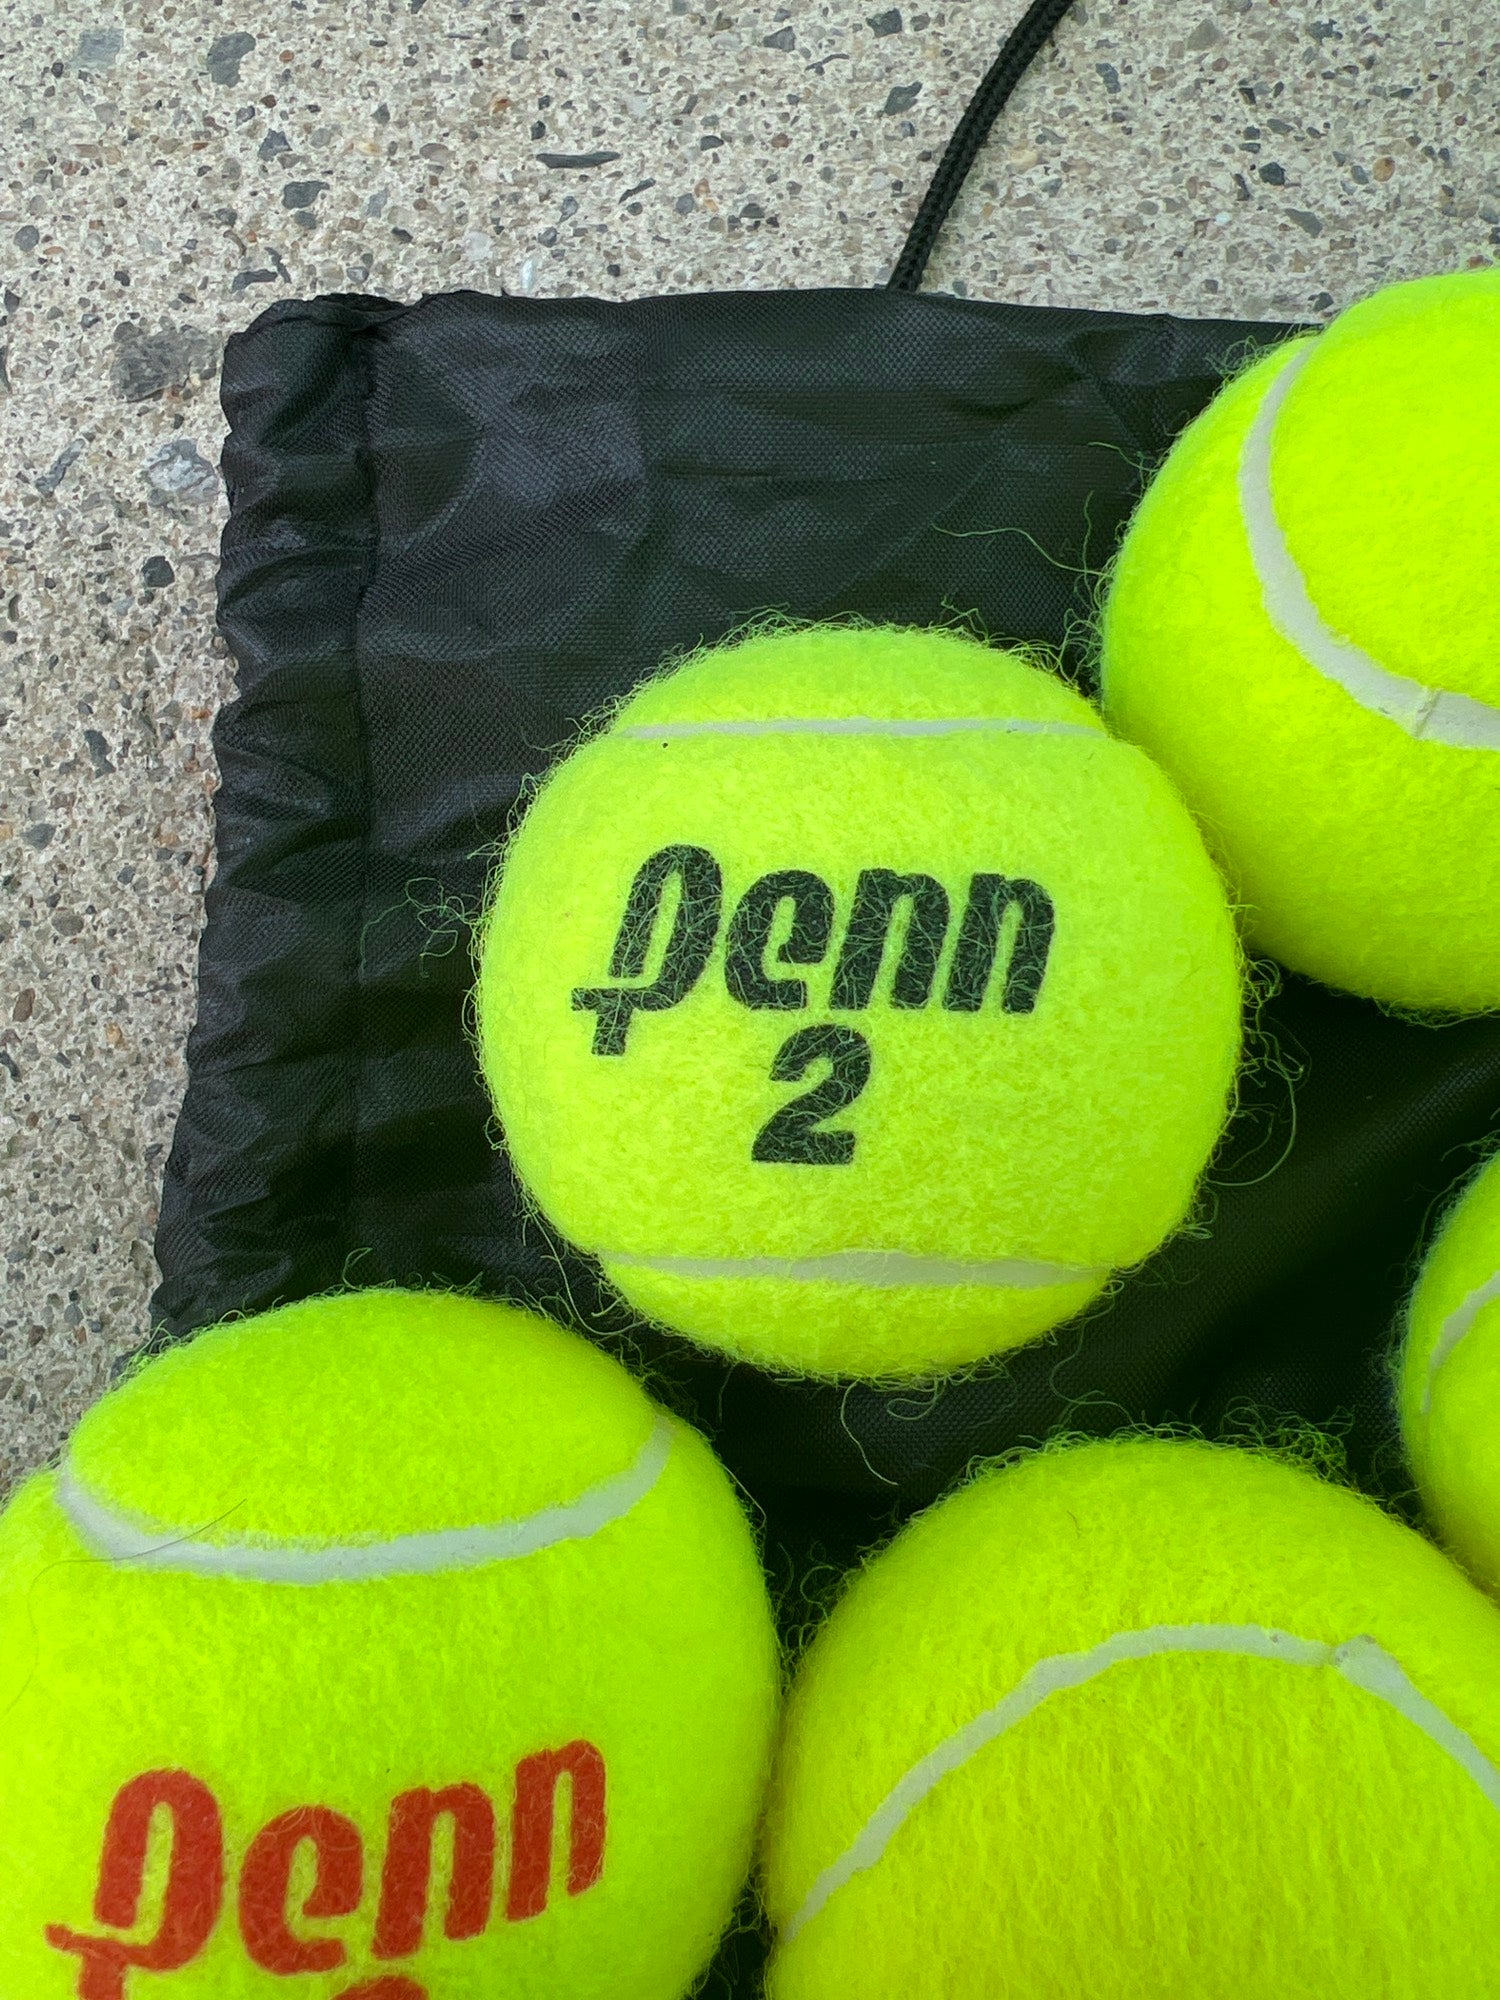 Penn 4 Tennis Ball